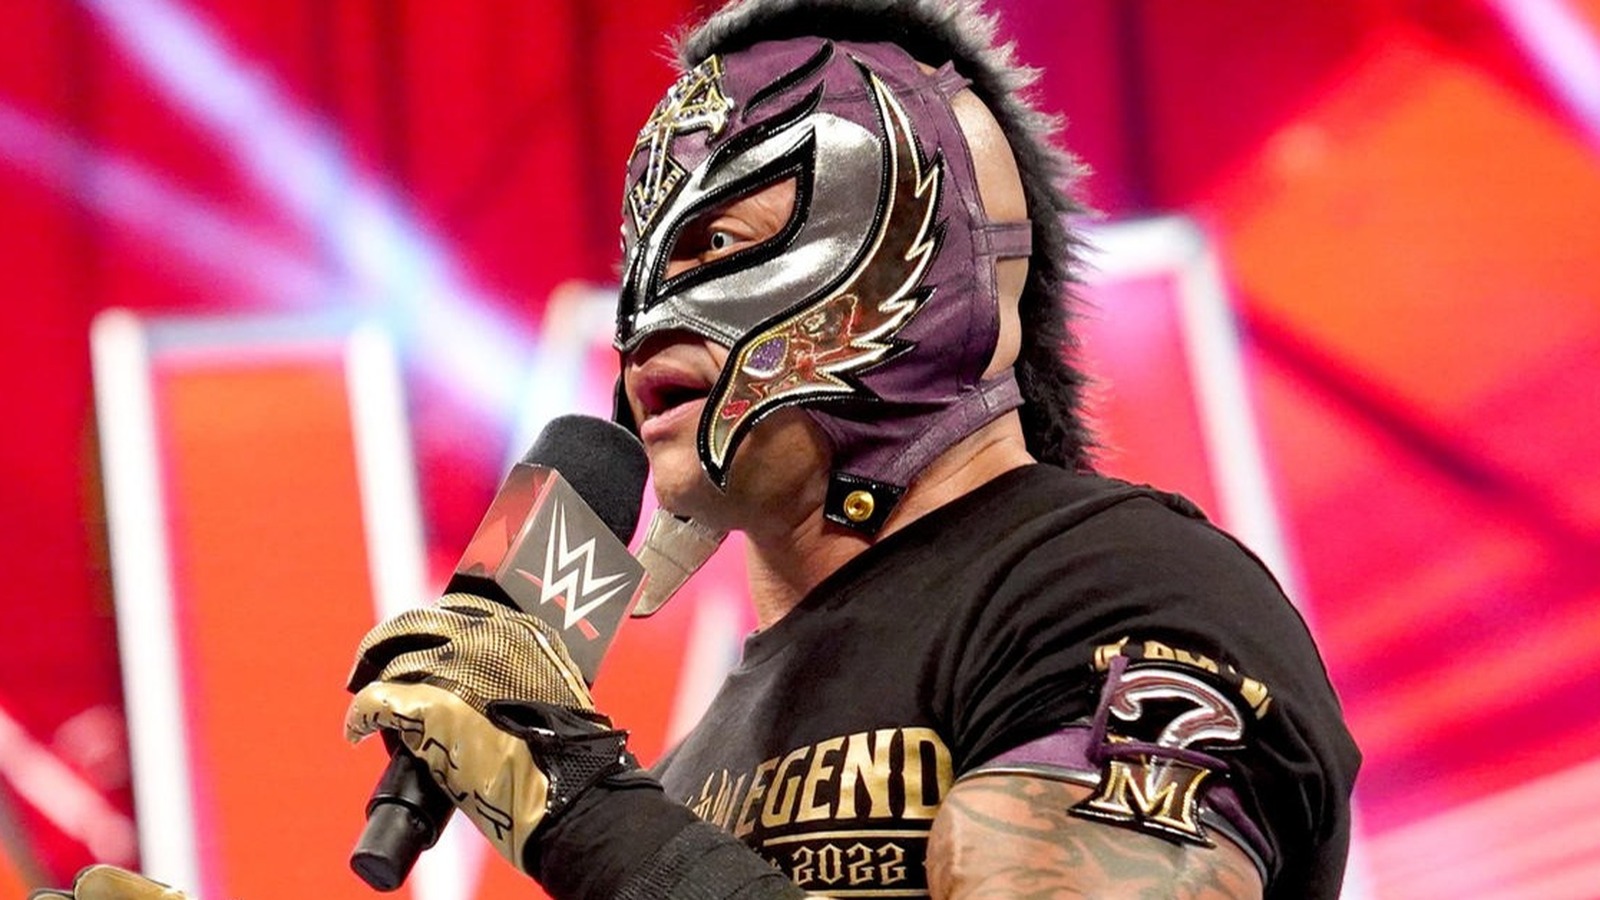 Actualización sobre la lesión de la estrella de la WWE Rey Mysterio